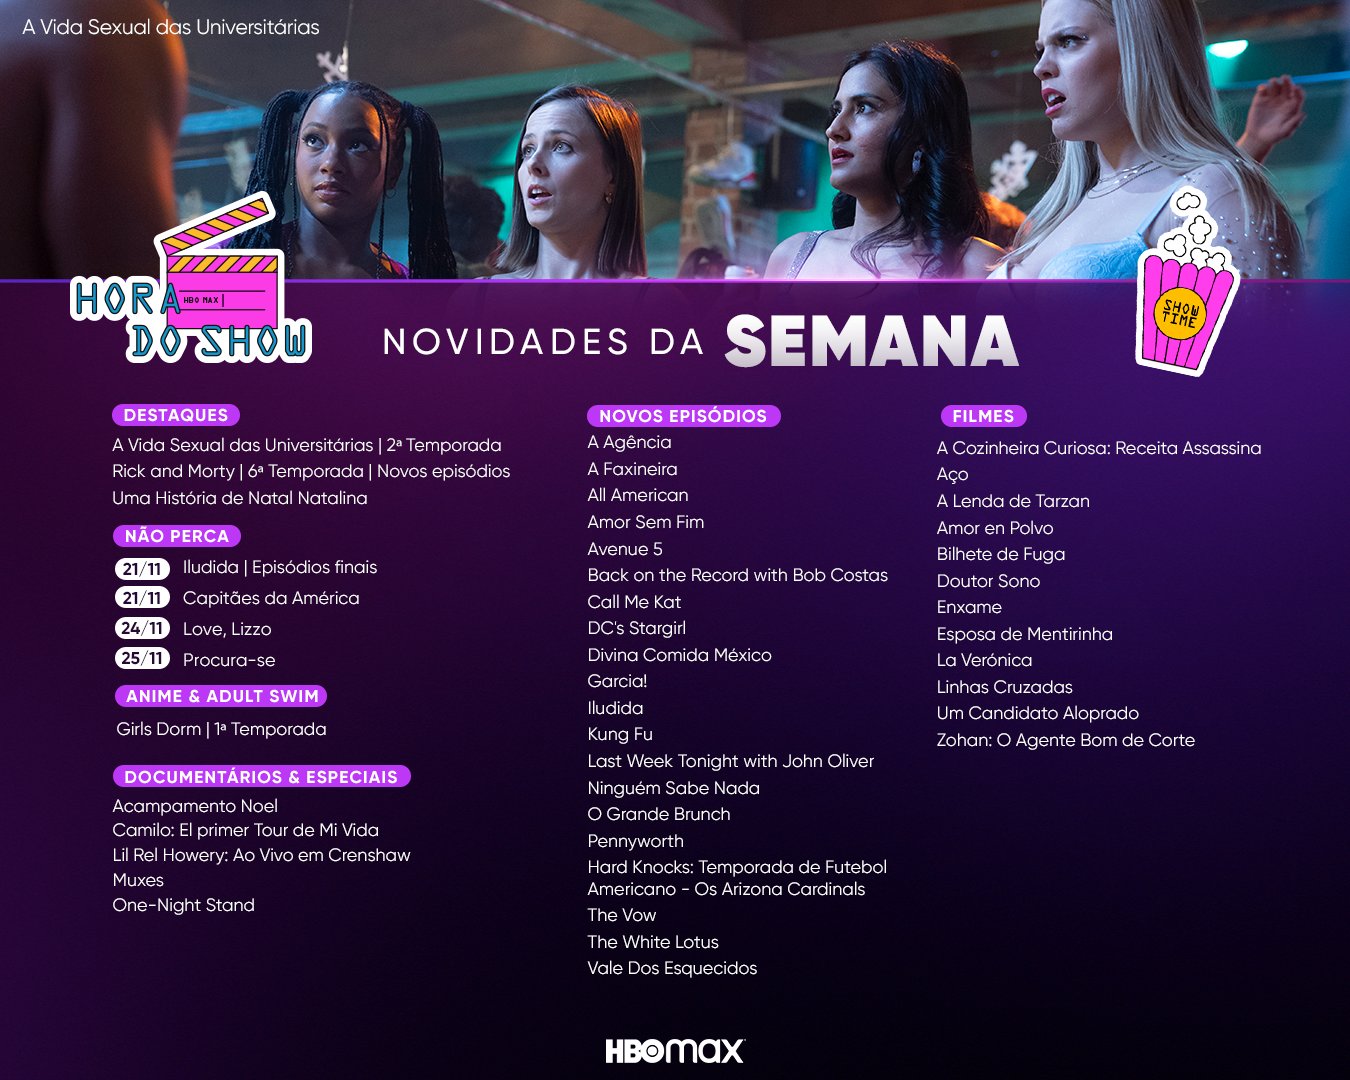 A Casa do Dragão': 2ª temporada começa a ser rodada em MARÇO! - CinePOP